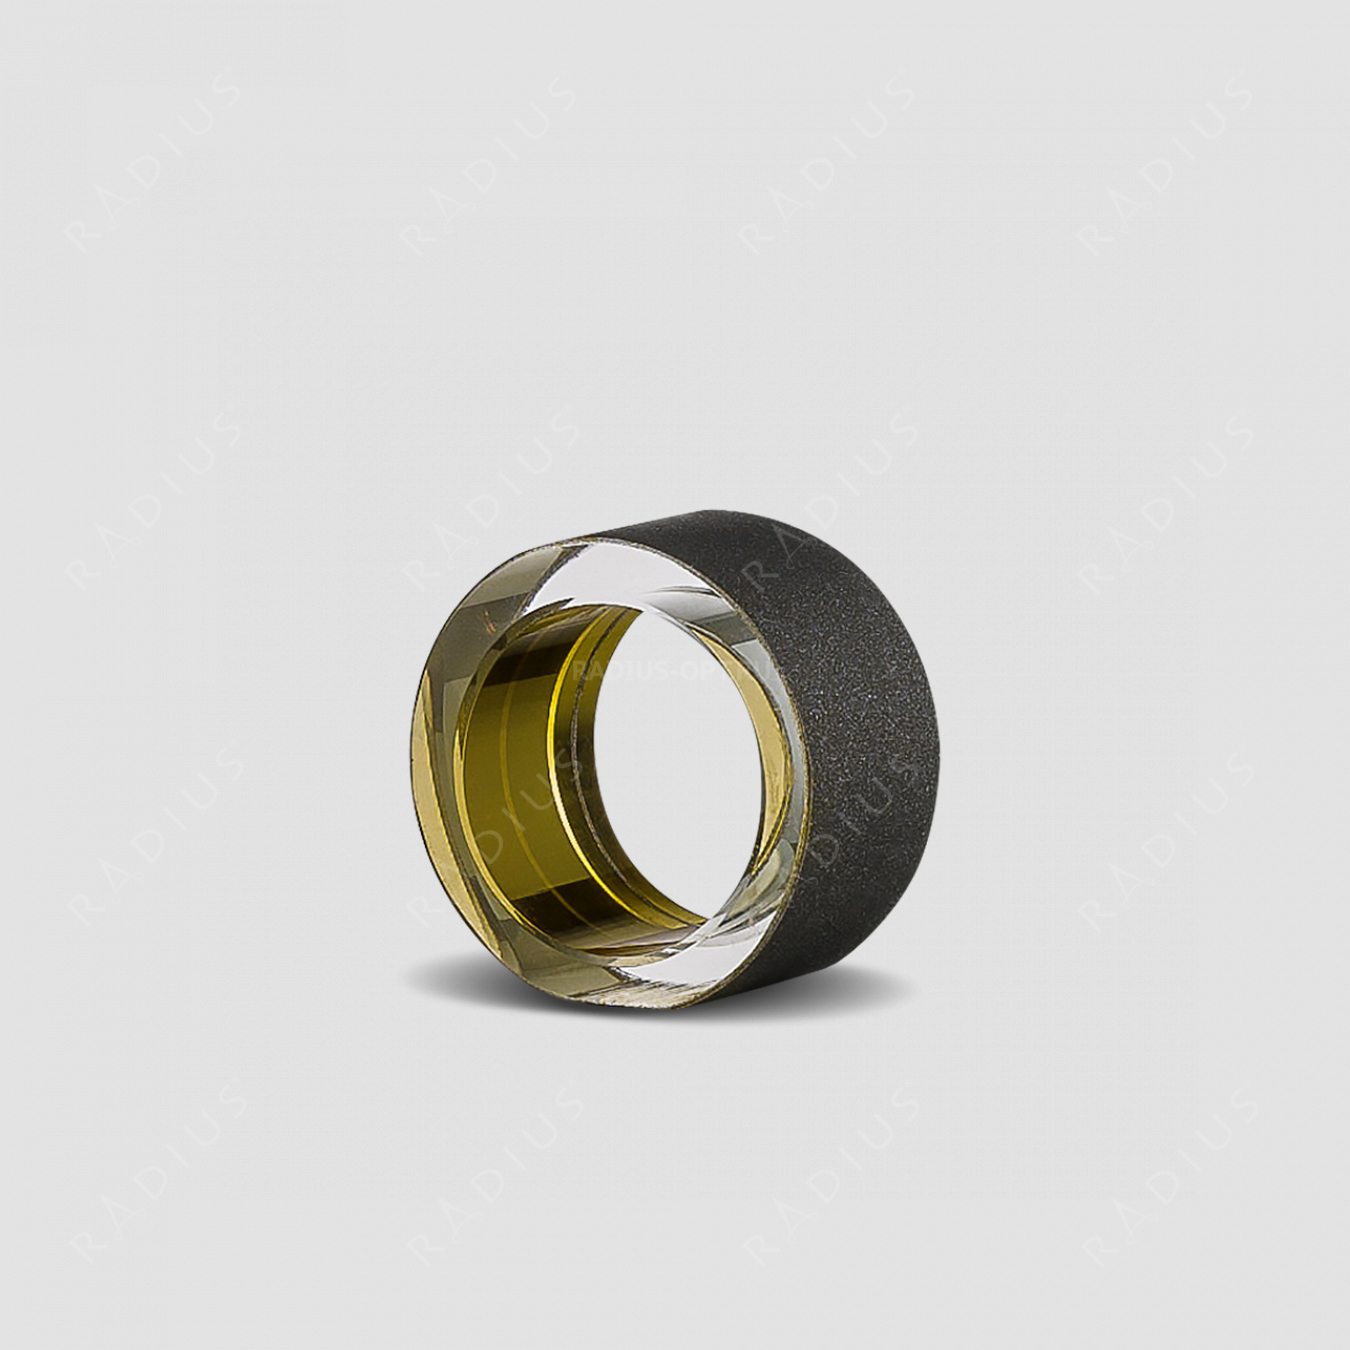 Кольцо для салфеток Gold, диаметр: 5 см, материал: бессвинцовый хрусталь, цвет: черный/золото, серия Cosmo, EISCH, Германия